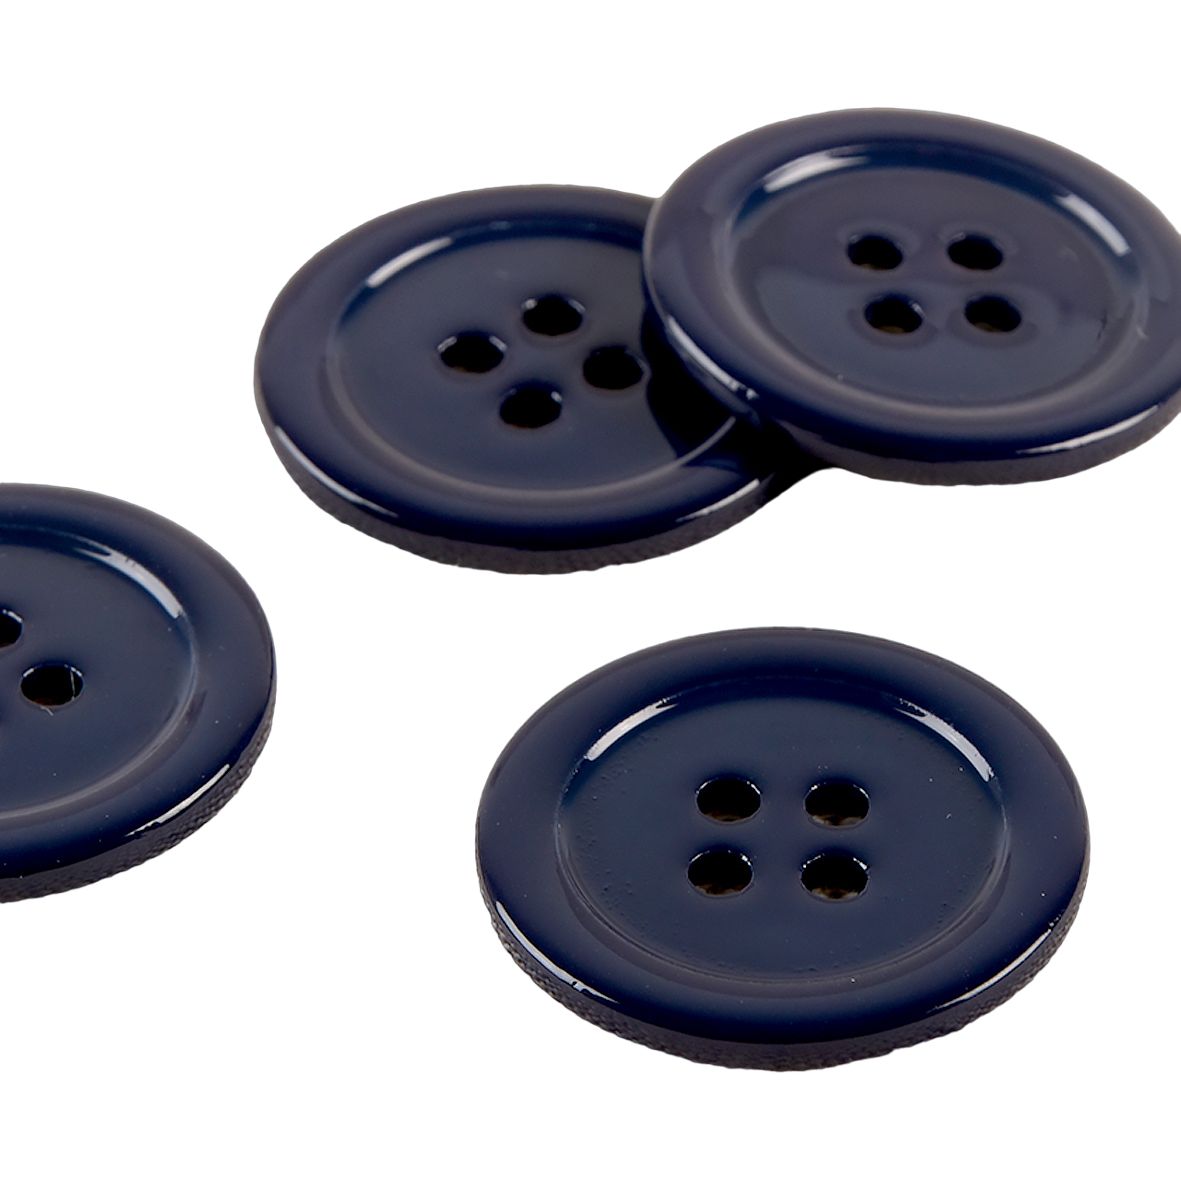 boutons ronds bleu marine VINTAGE 30 mm - SUR TOUTES LES COUTURES -  Mercerie - Laine - Retouches - Lingerie jour et nuit